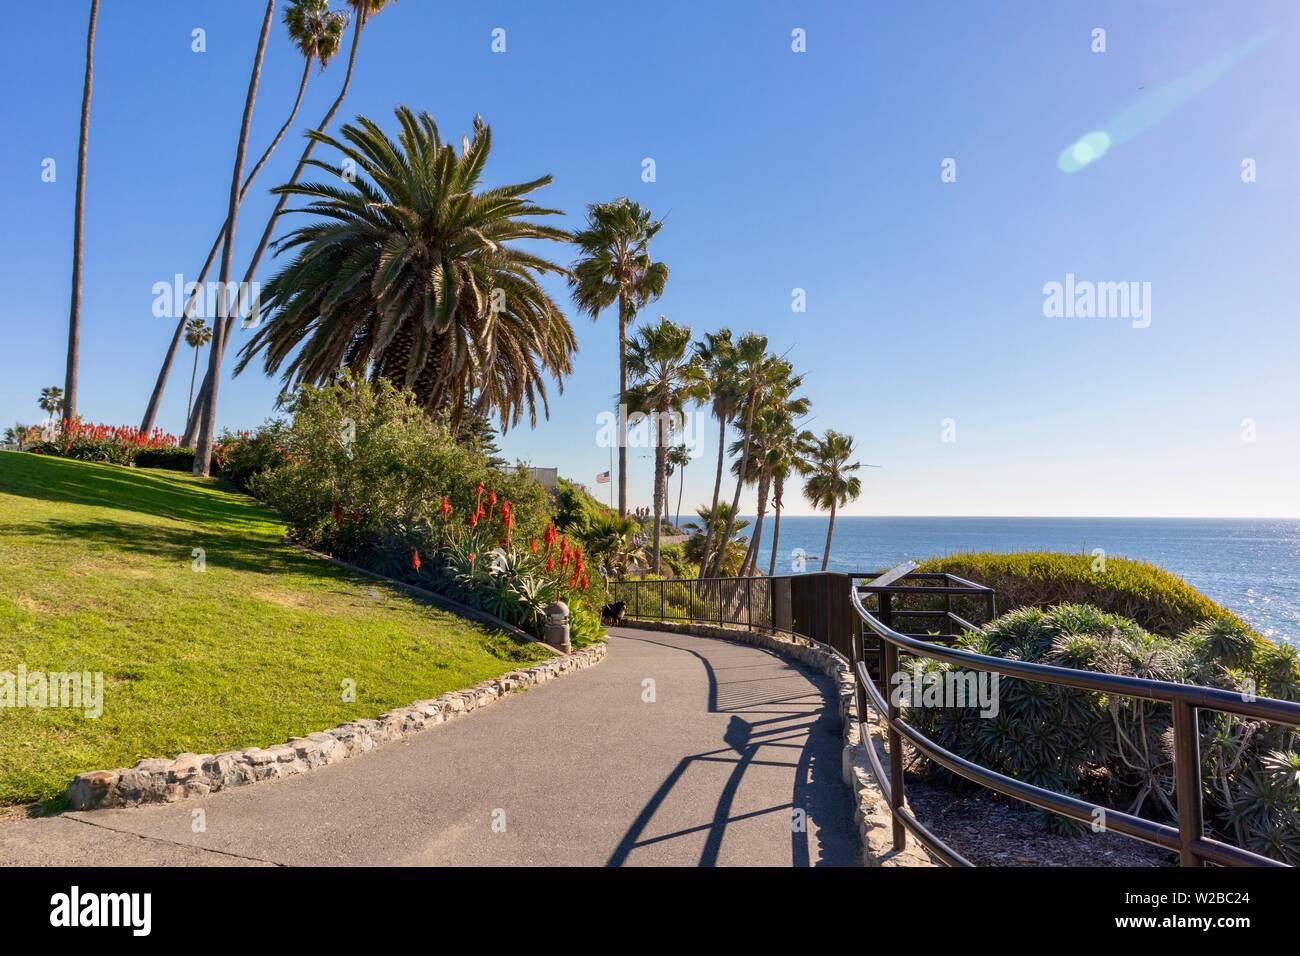 Heisler Park in Laguna Beach, California Stock Photo